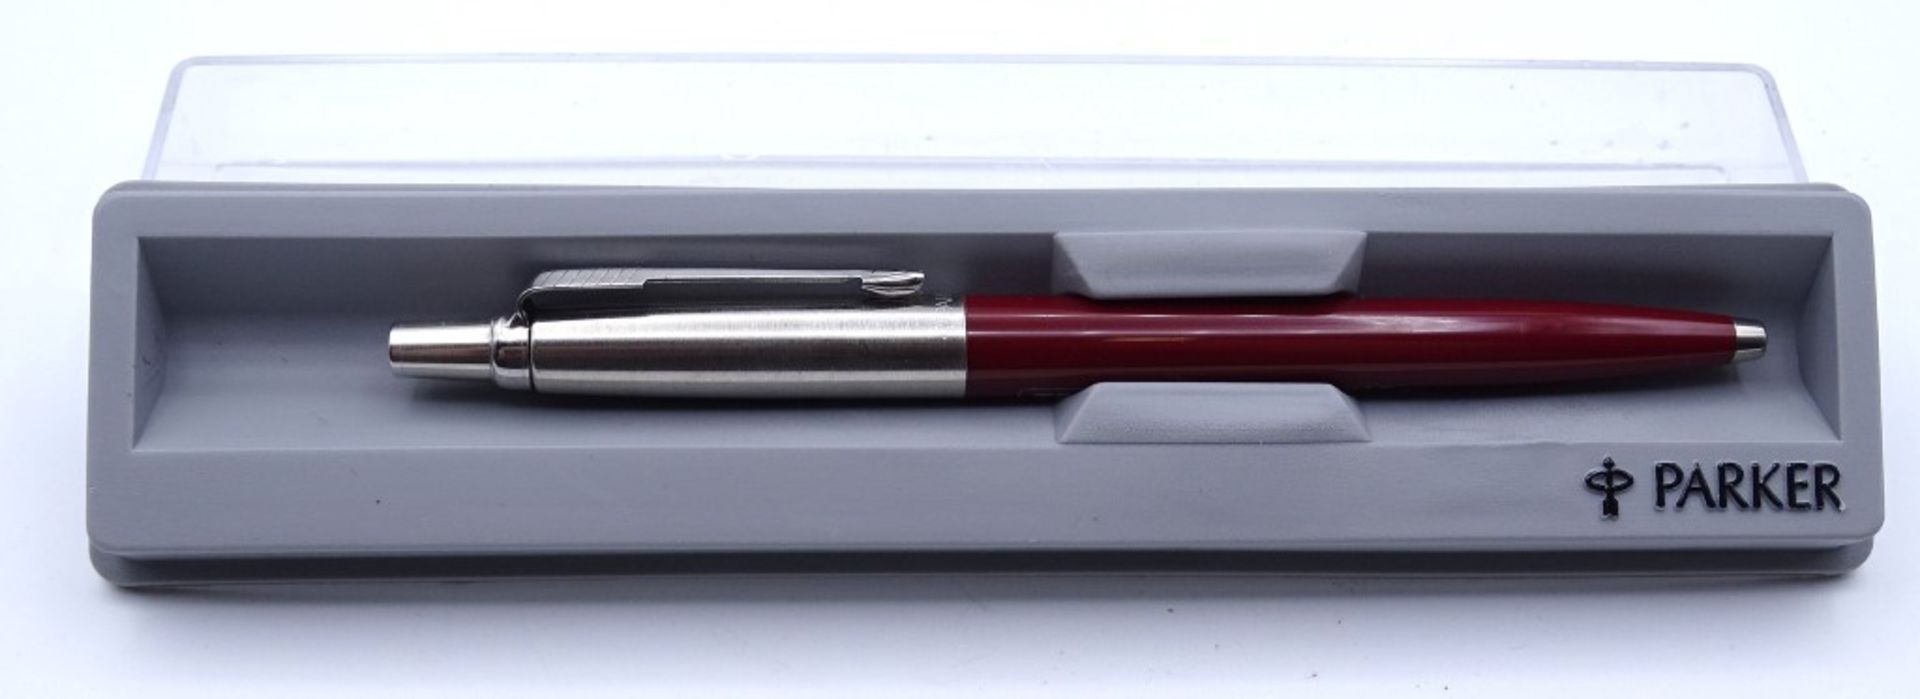 Kugelschreiber "Parker", in Schachtel, mit Werbung - Bild 2 aus 5